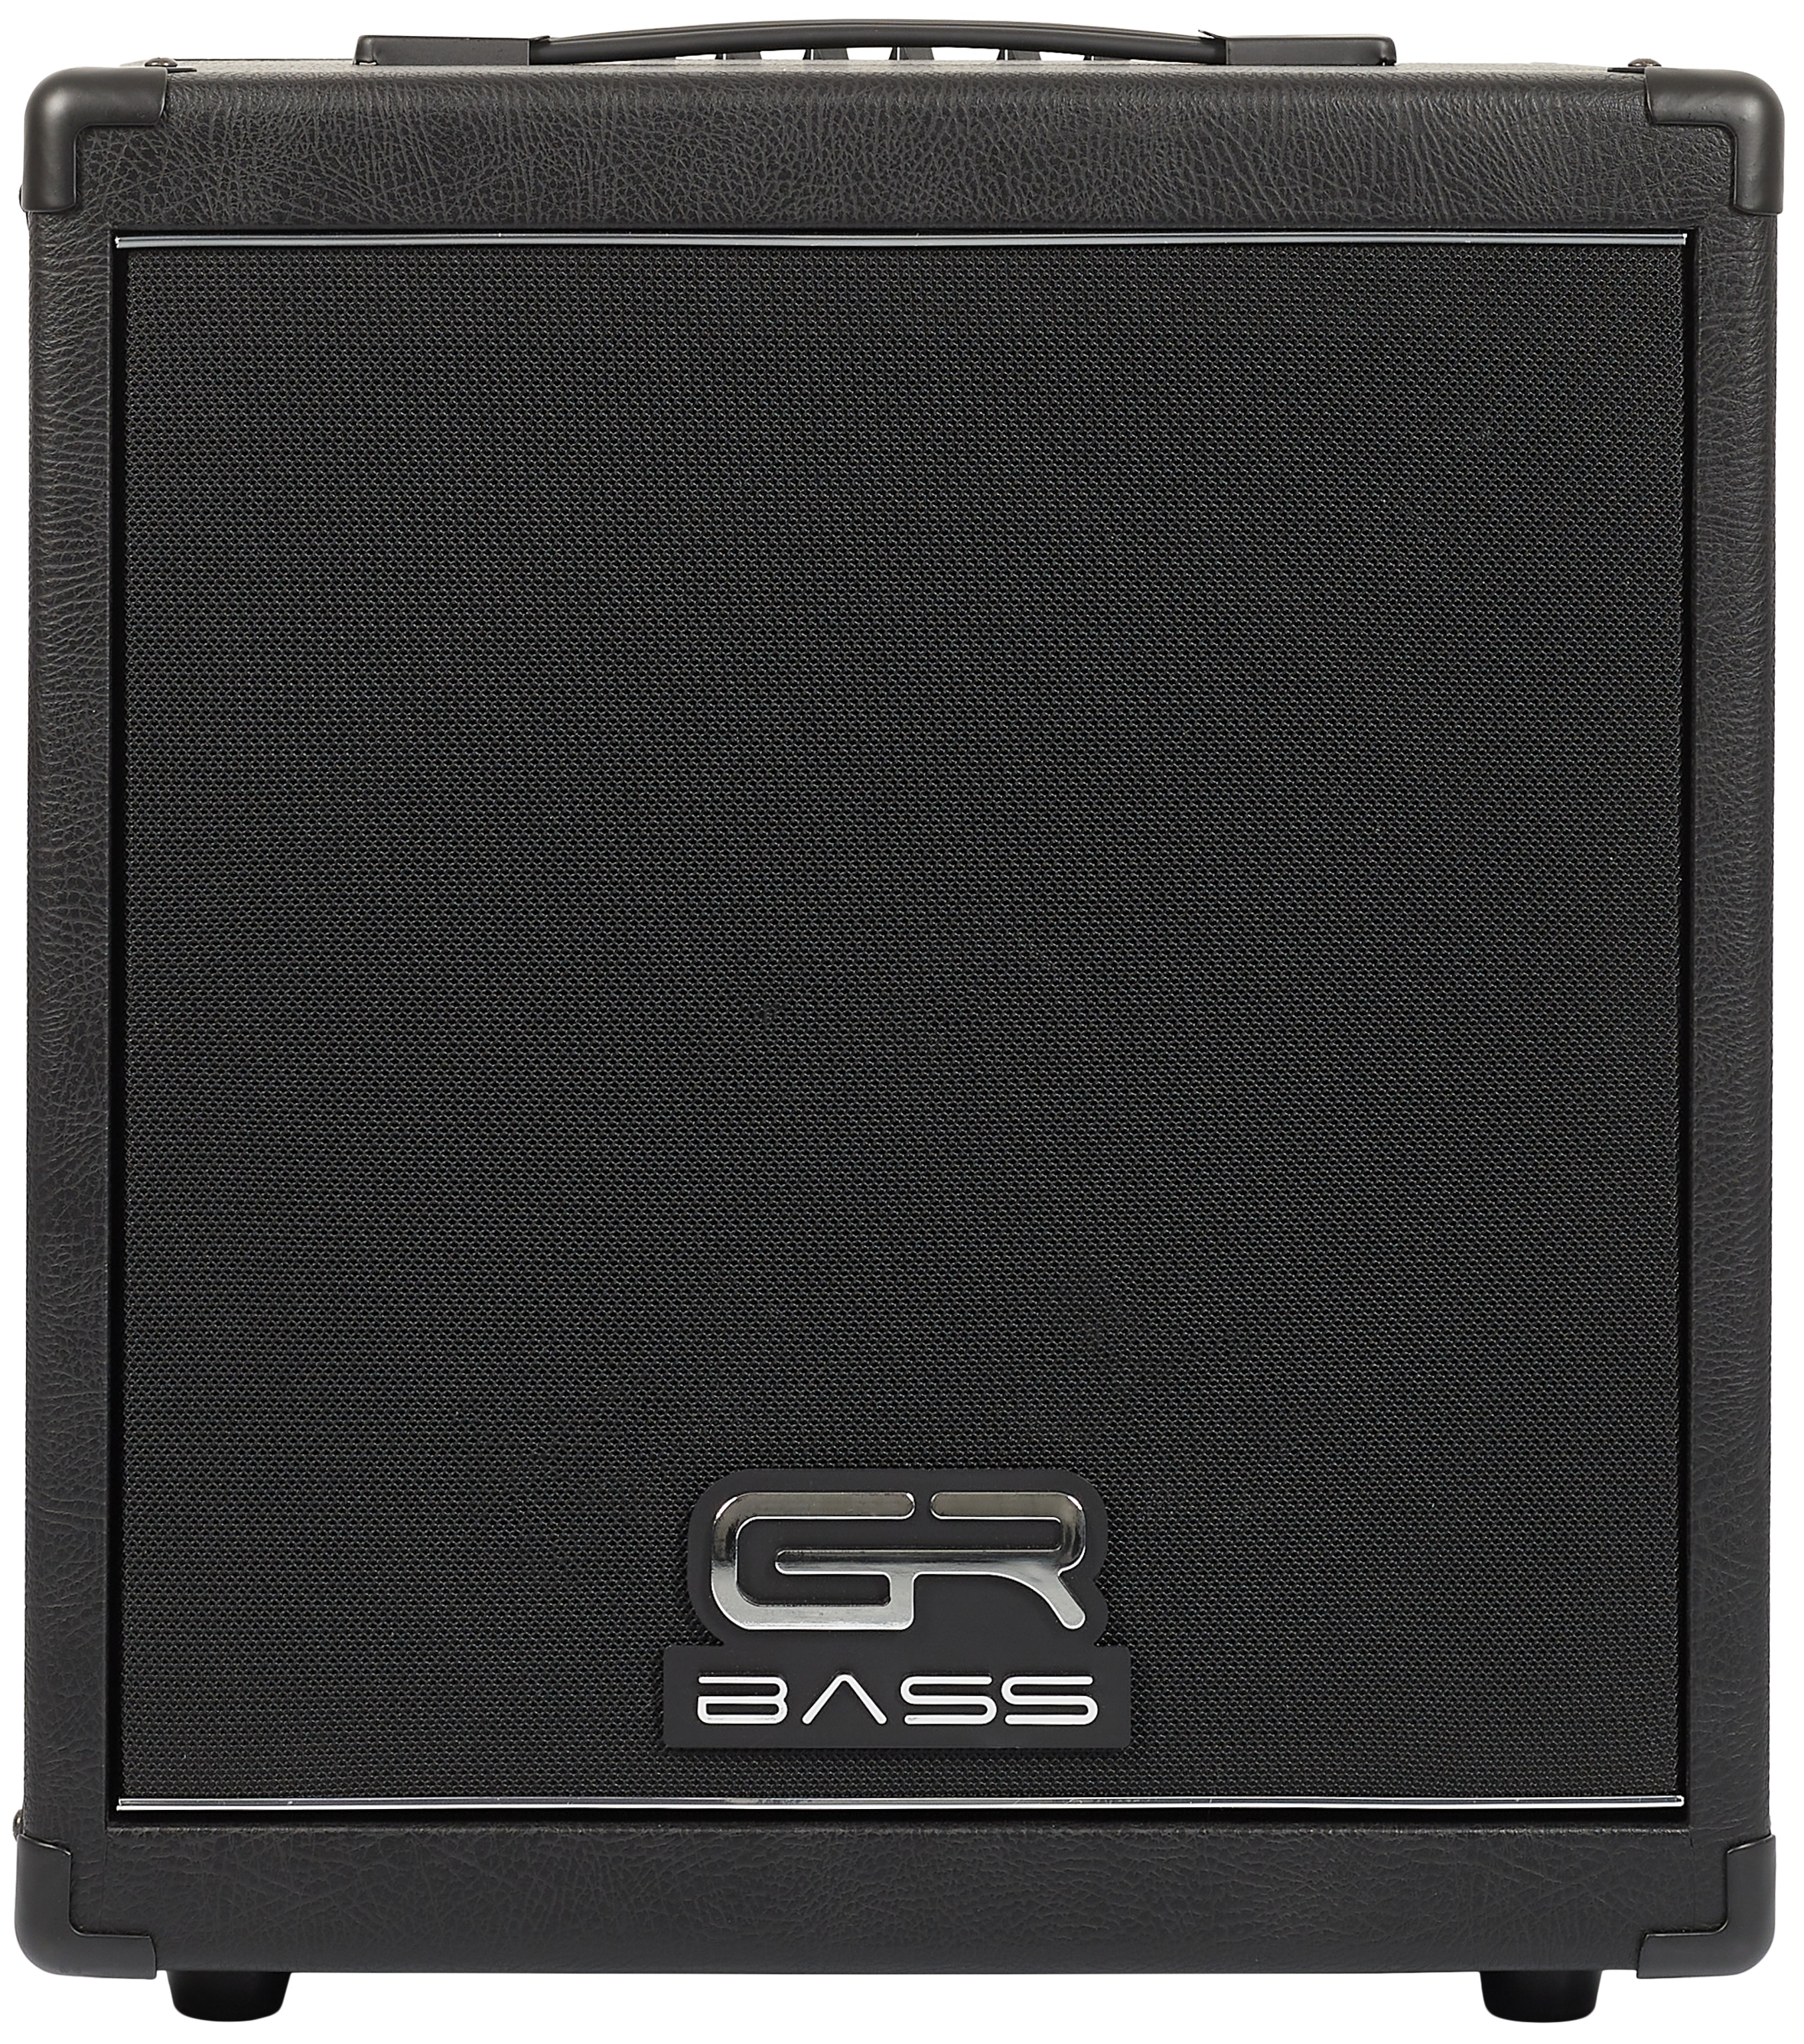 GR Bass CUBE 350